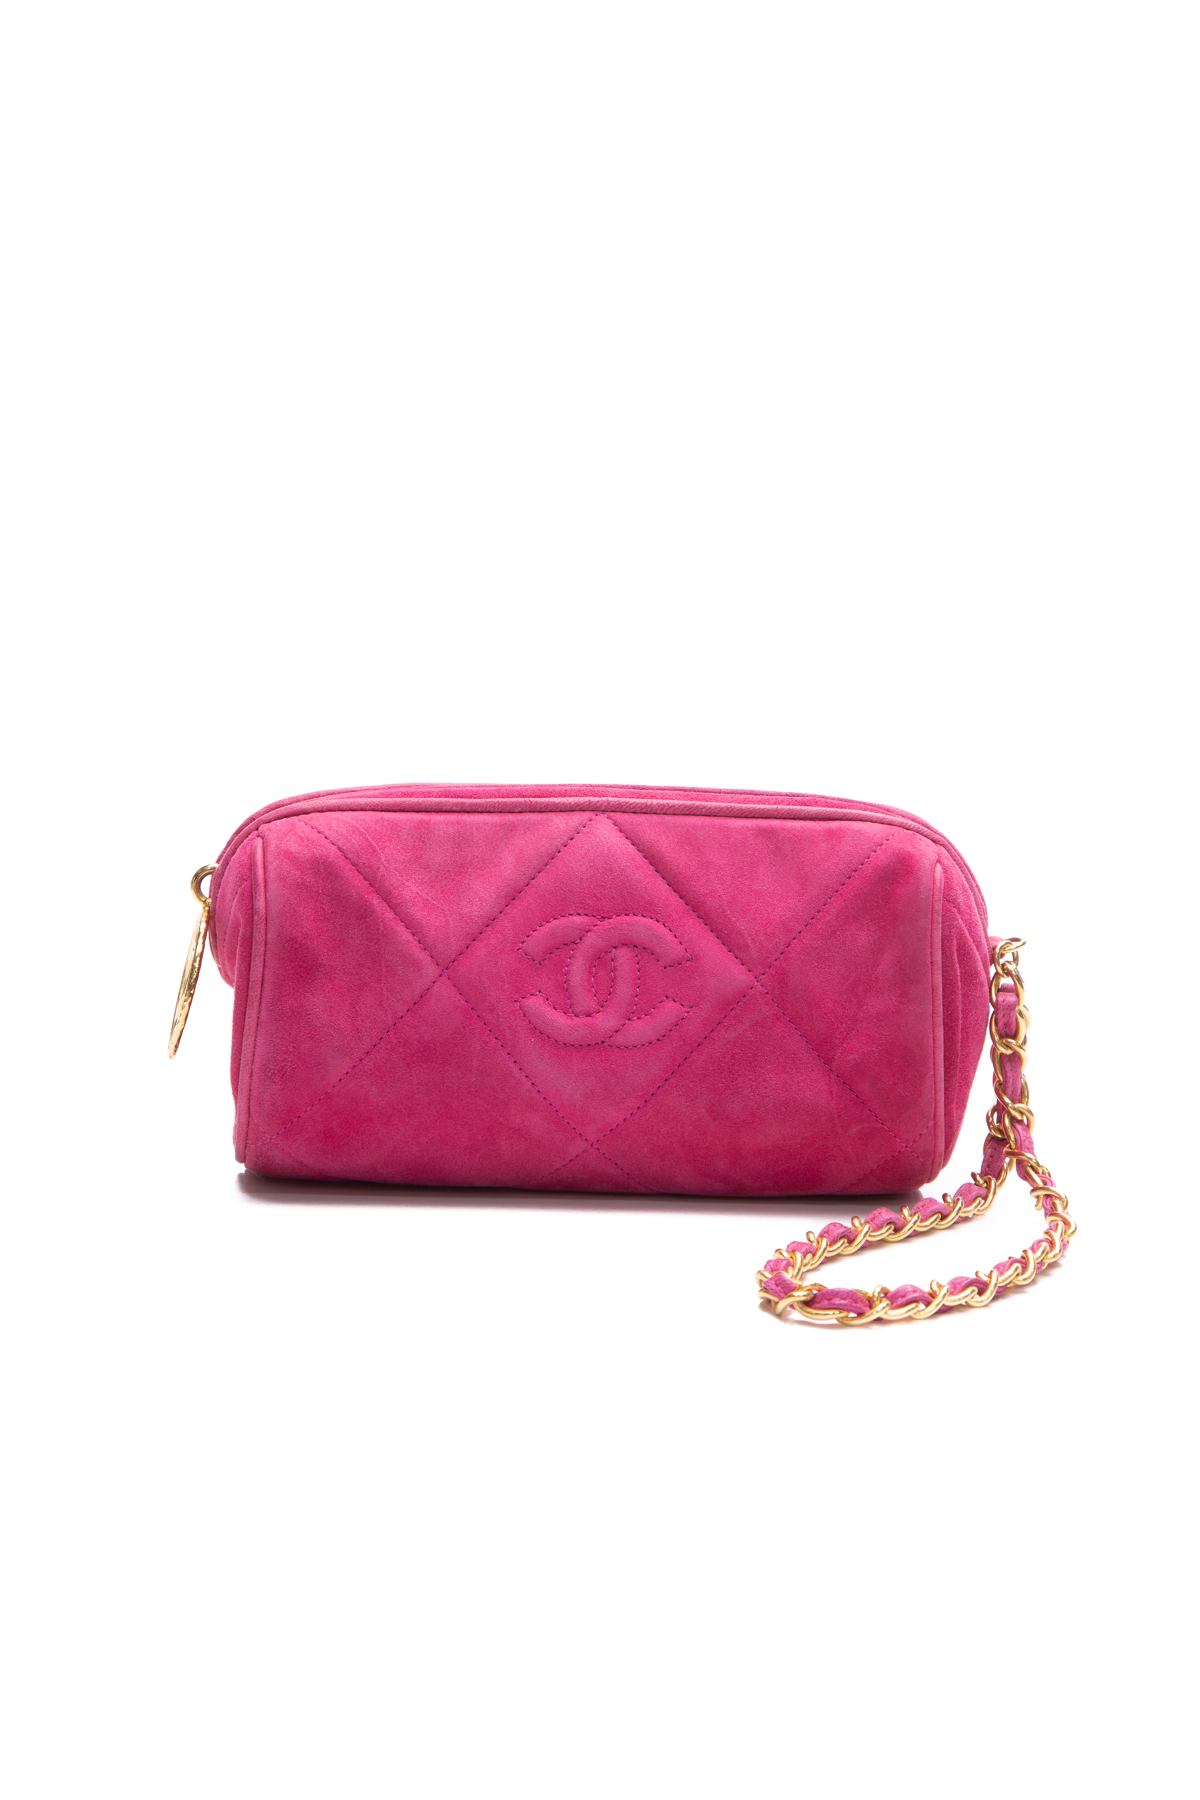 Chanel Pink Camera Handbag